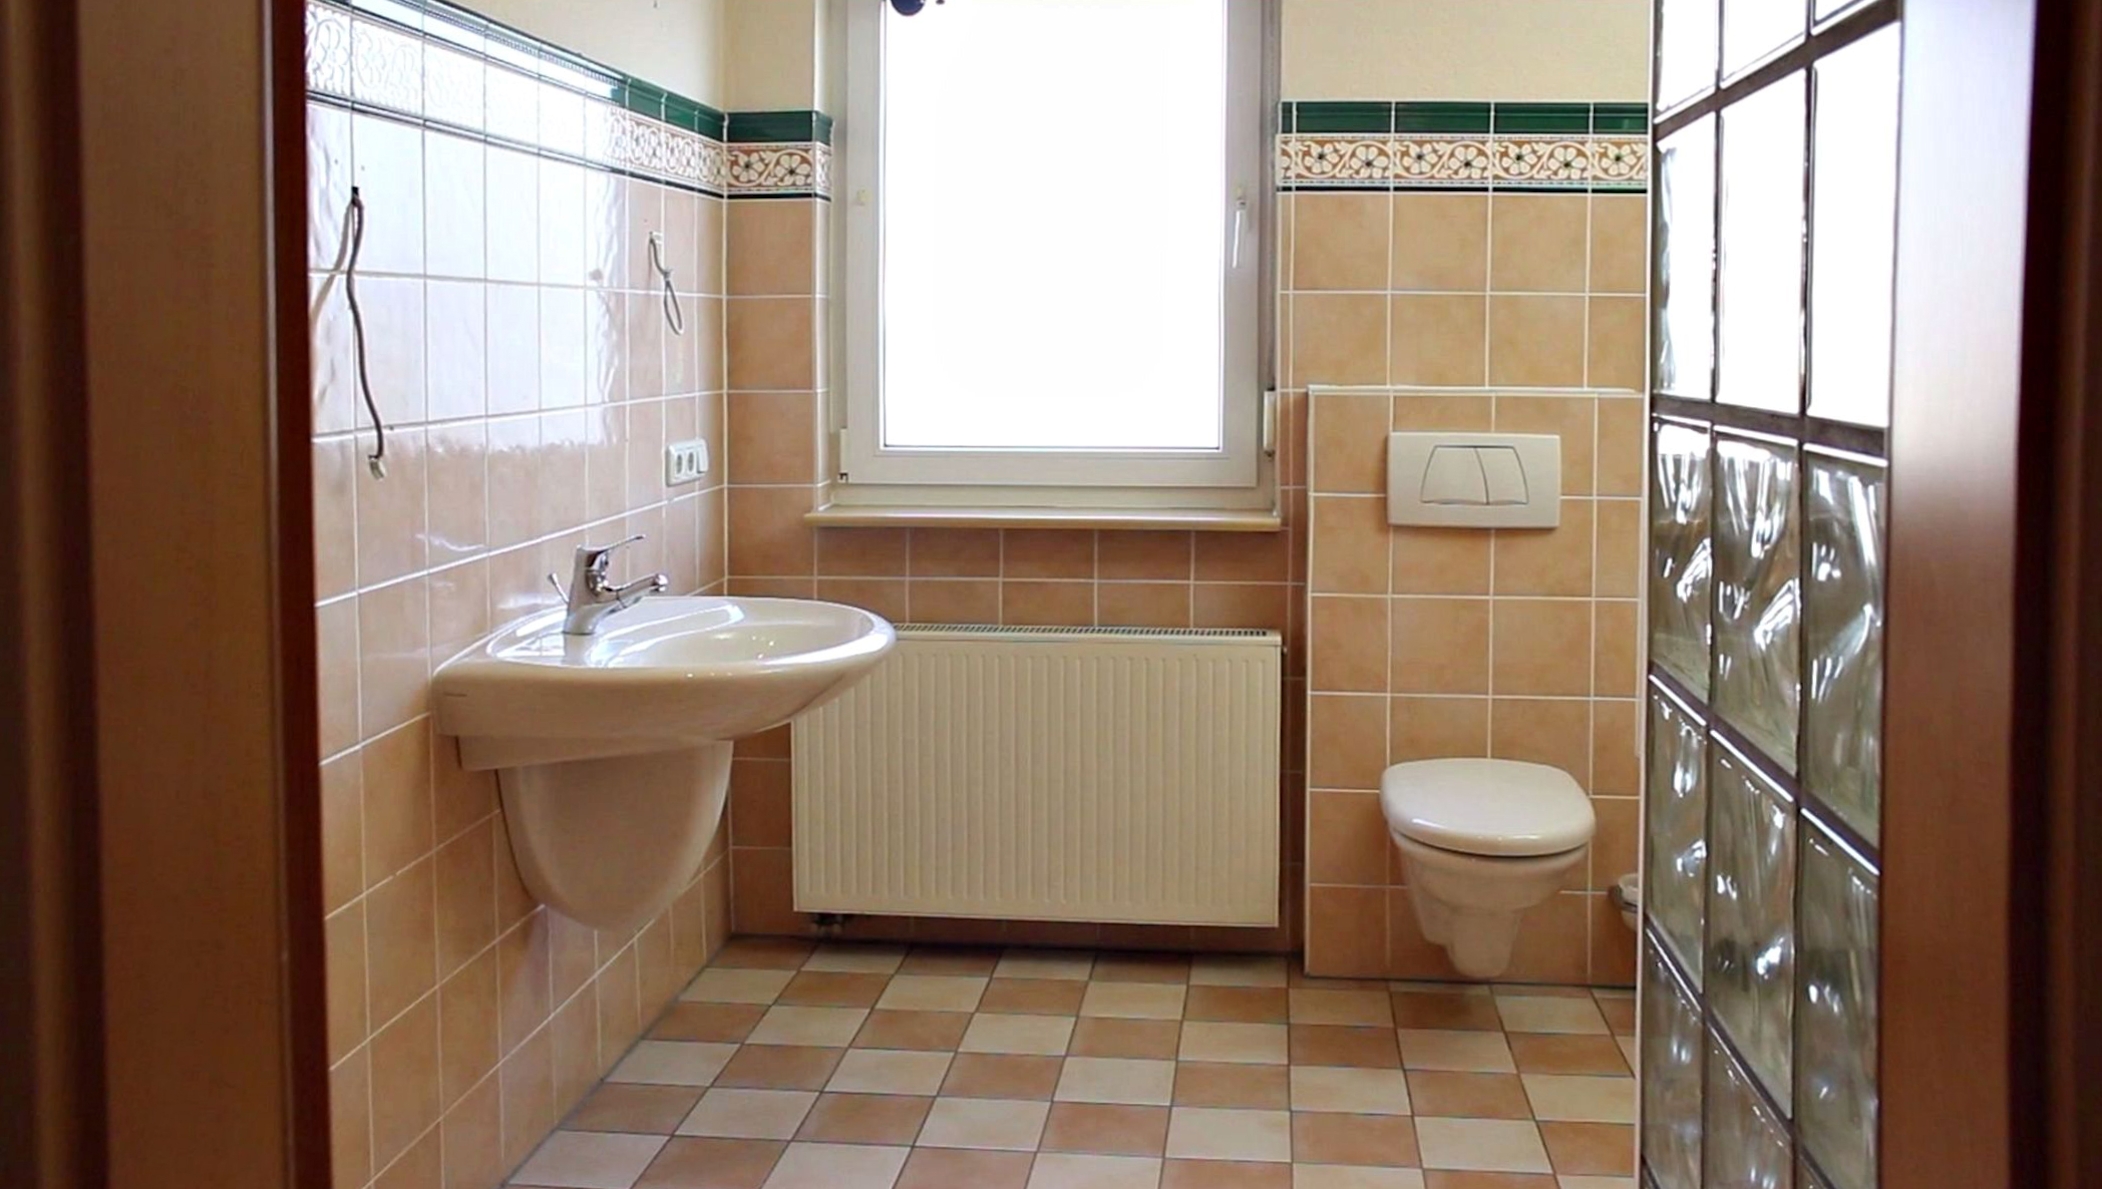 altmodisches Badezimmer in Beigetönen.